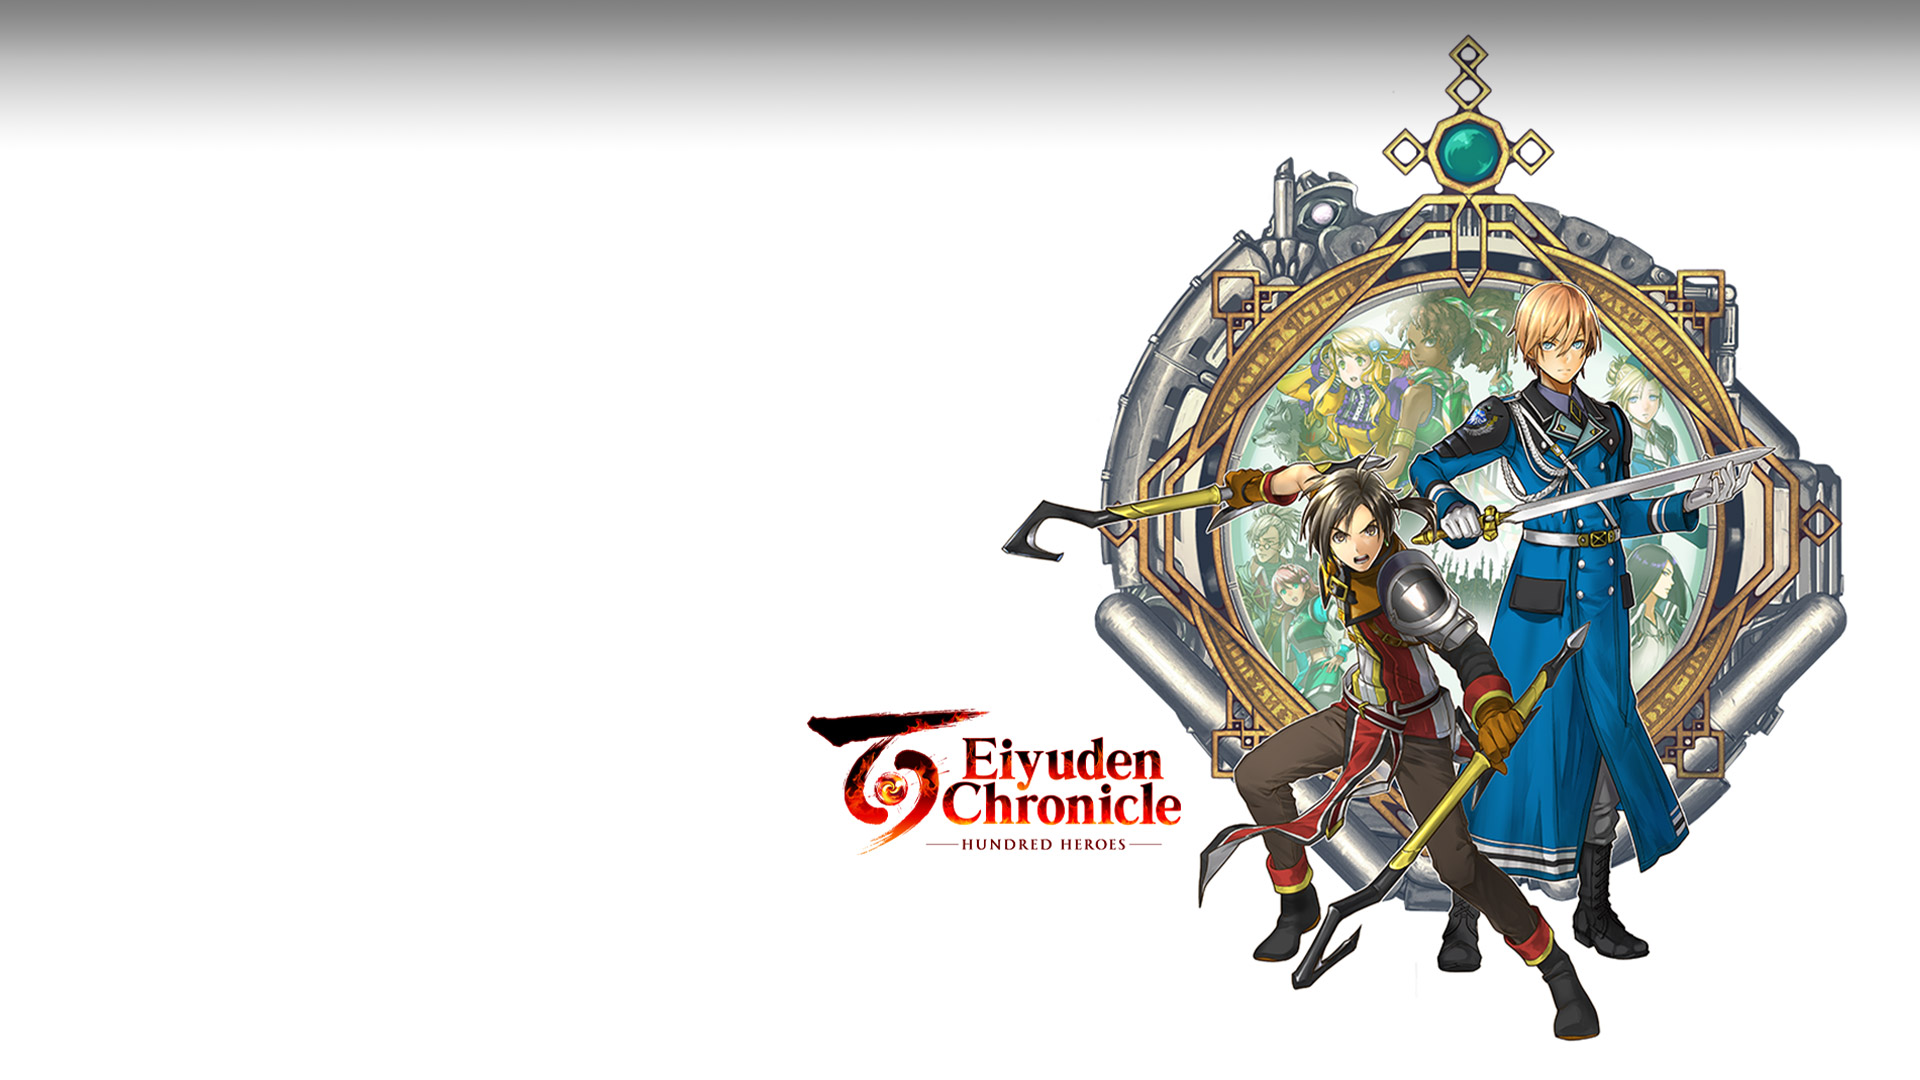 Eiyuden Chronicle: Hundred Heroes. Kaksi aseistettua hahmoa seisoo amulettia muistuttavan taustan edessä, ja taustan keskellä on muita hahmoja.